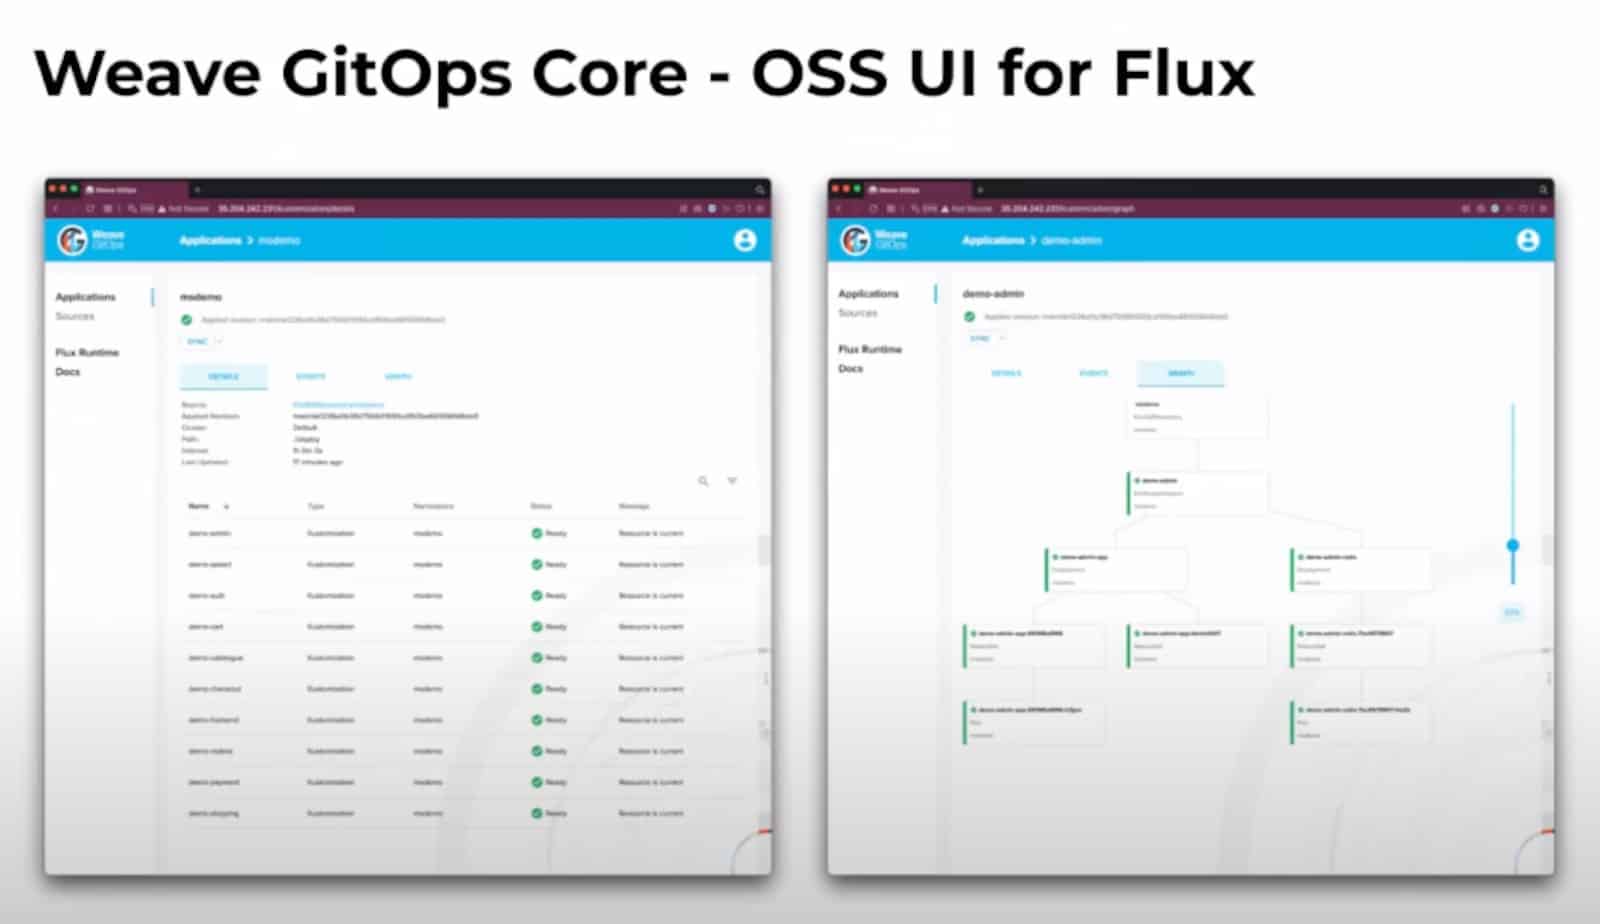 Screenshot showing Weave GitOps Core - OSS UI for Flux